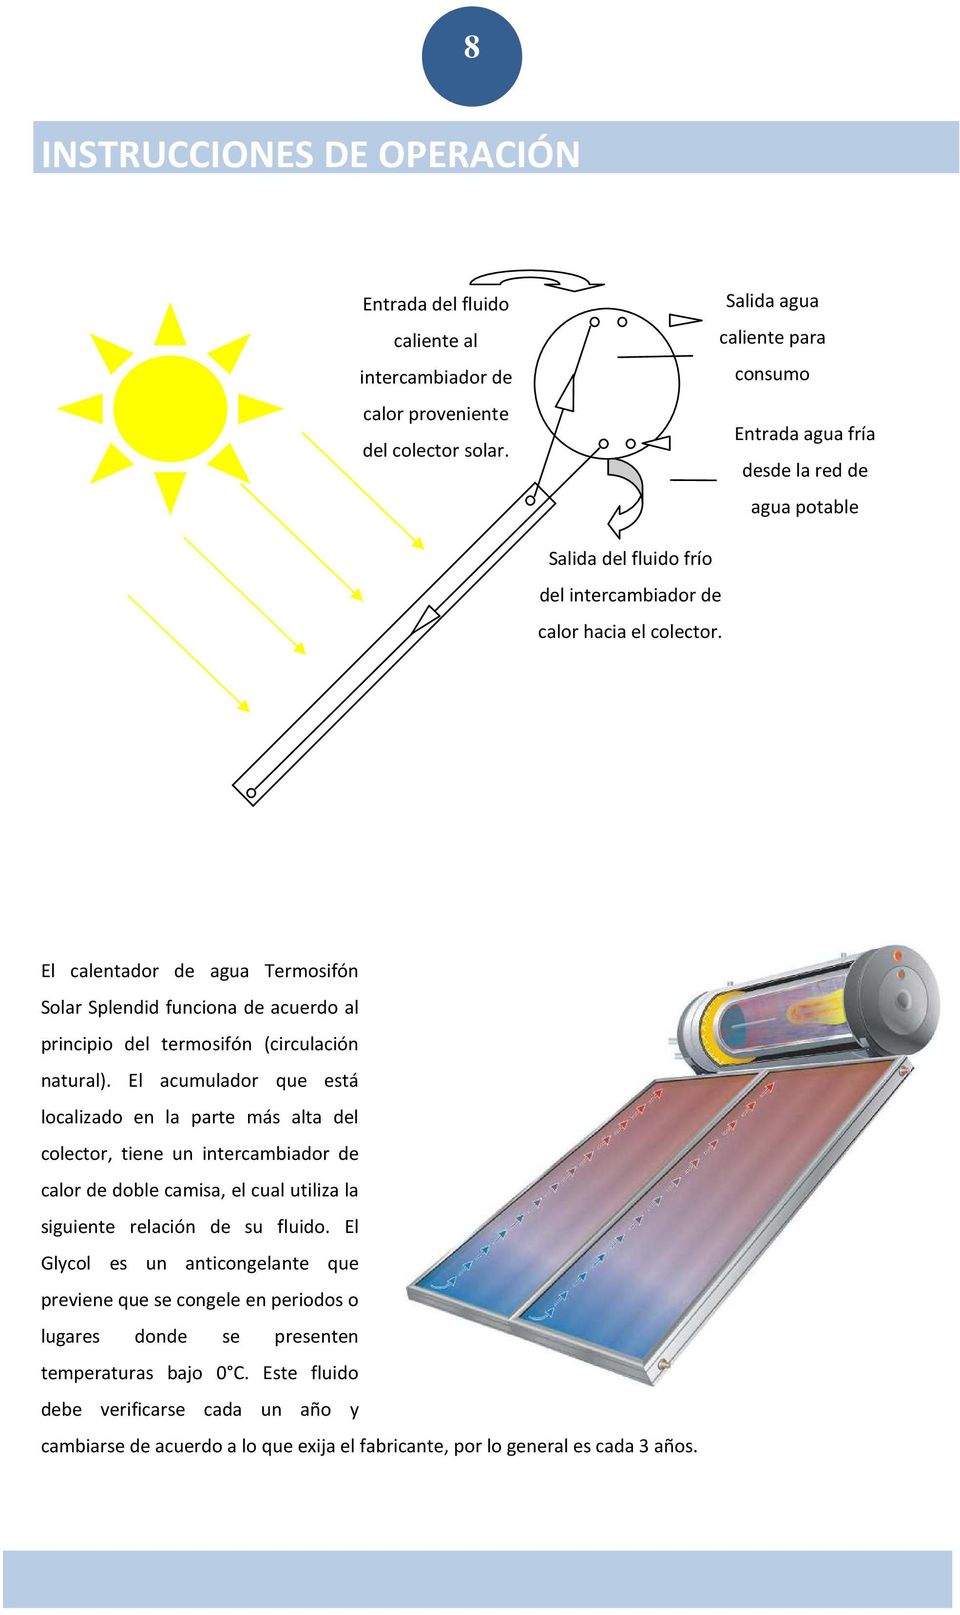 El calentador de agua Termosifón Solar Splendid funciona de acuerdo al principio del termosifón (circulación natural).